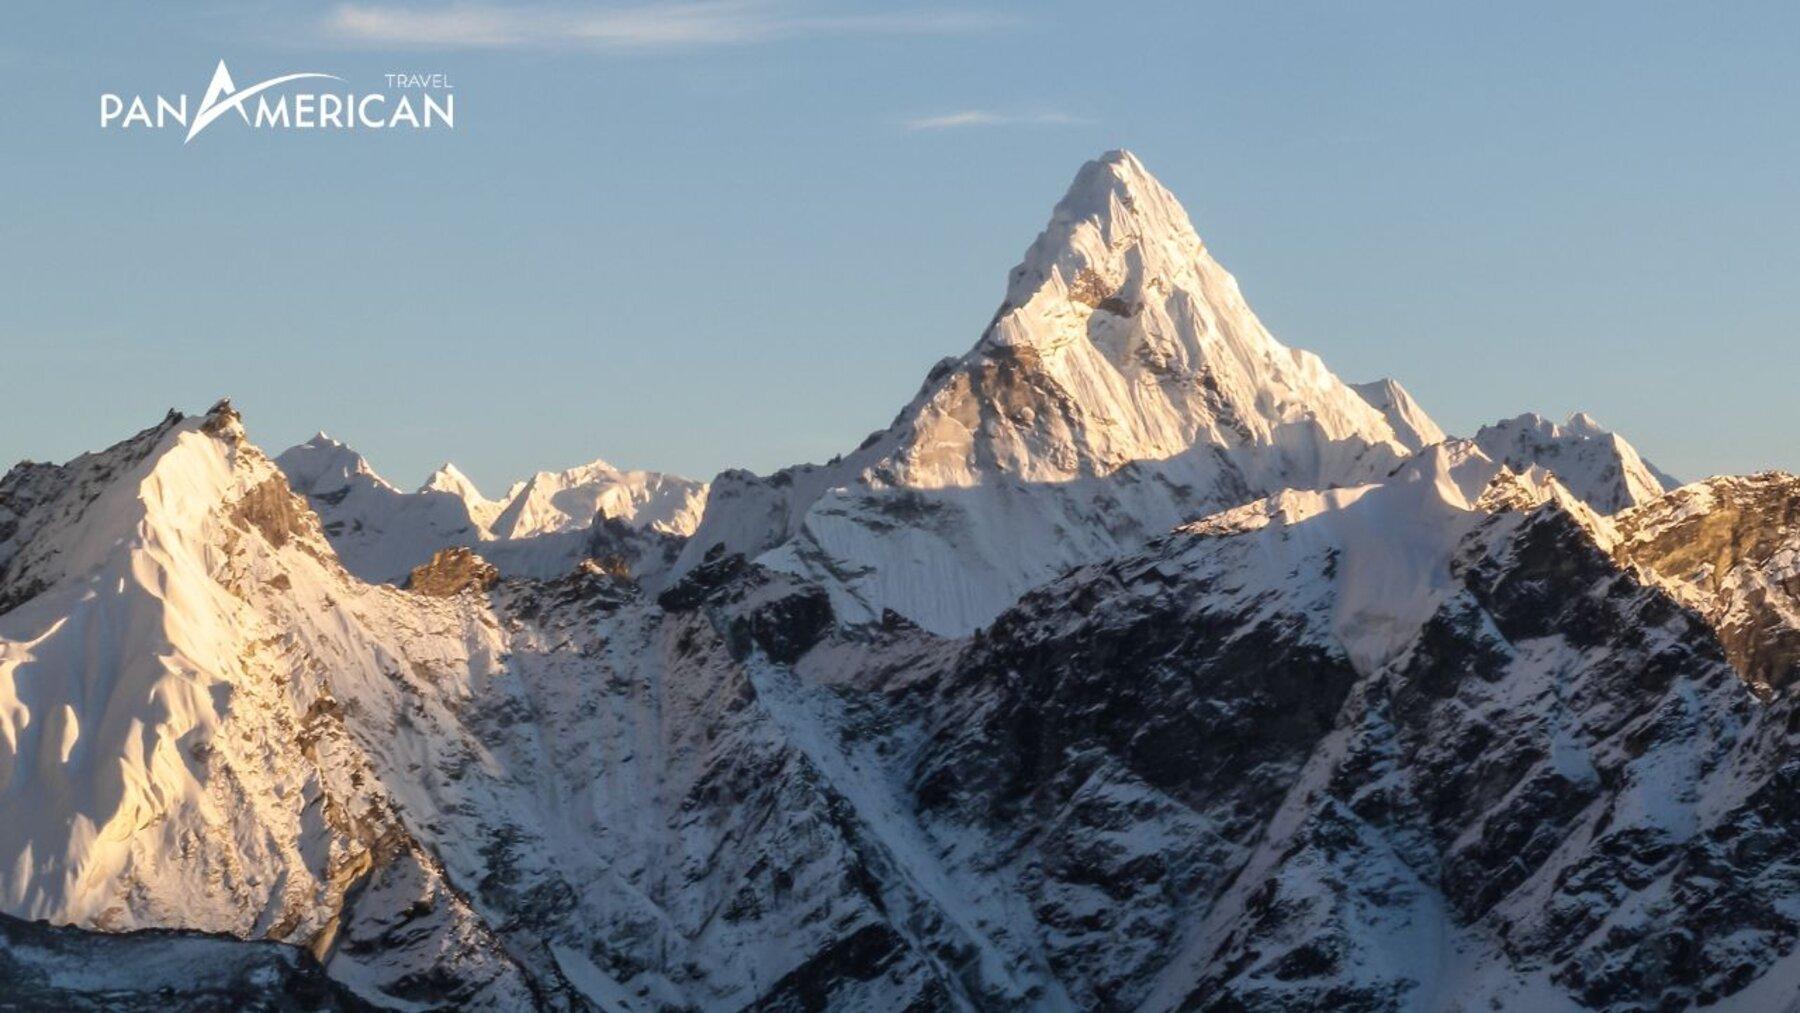 Đỉnh núi Everest ở đâu? Chiêm ngưỡng vẻ đẹp toàn cảnh từ nóc nhà của thế giới